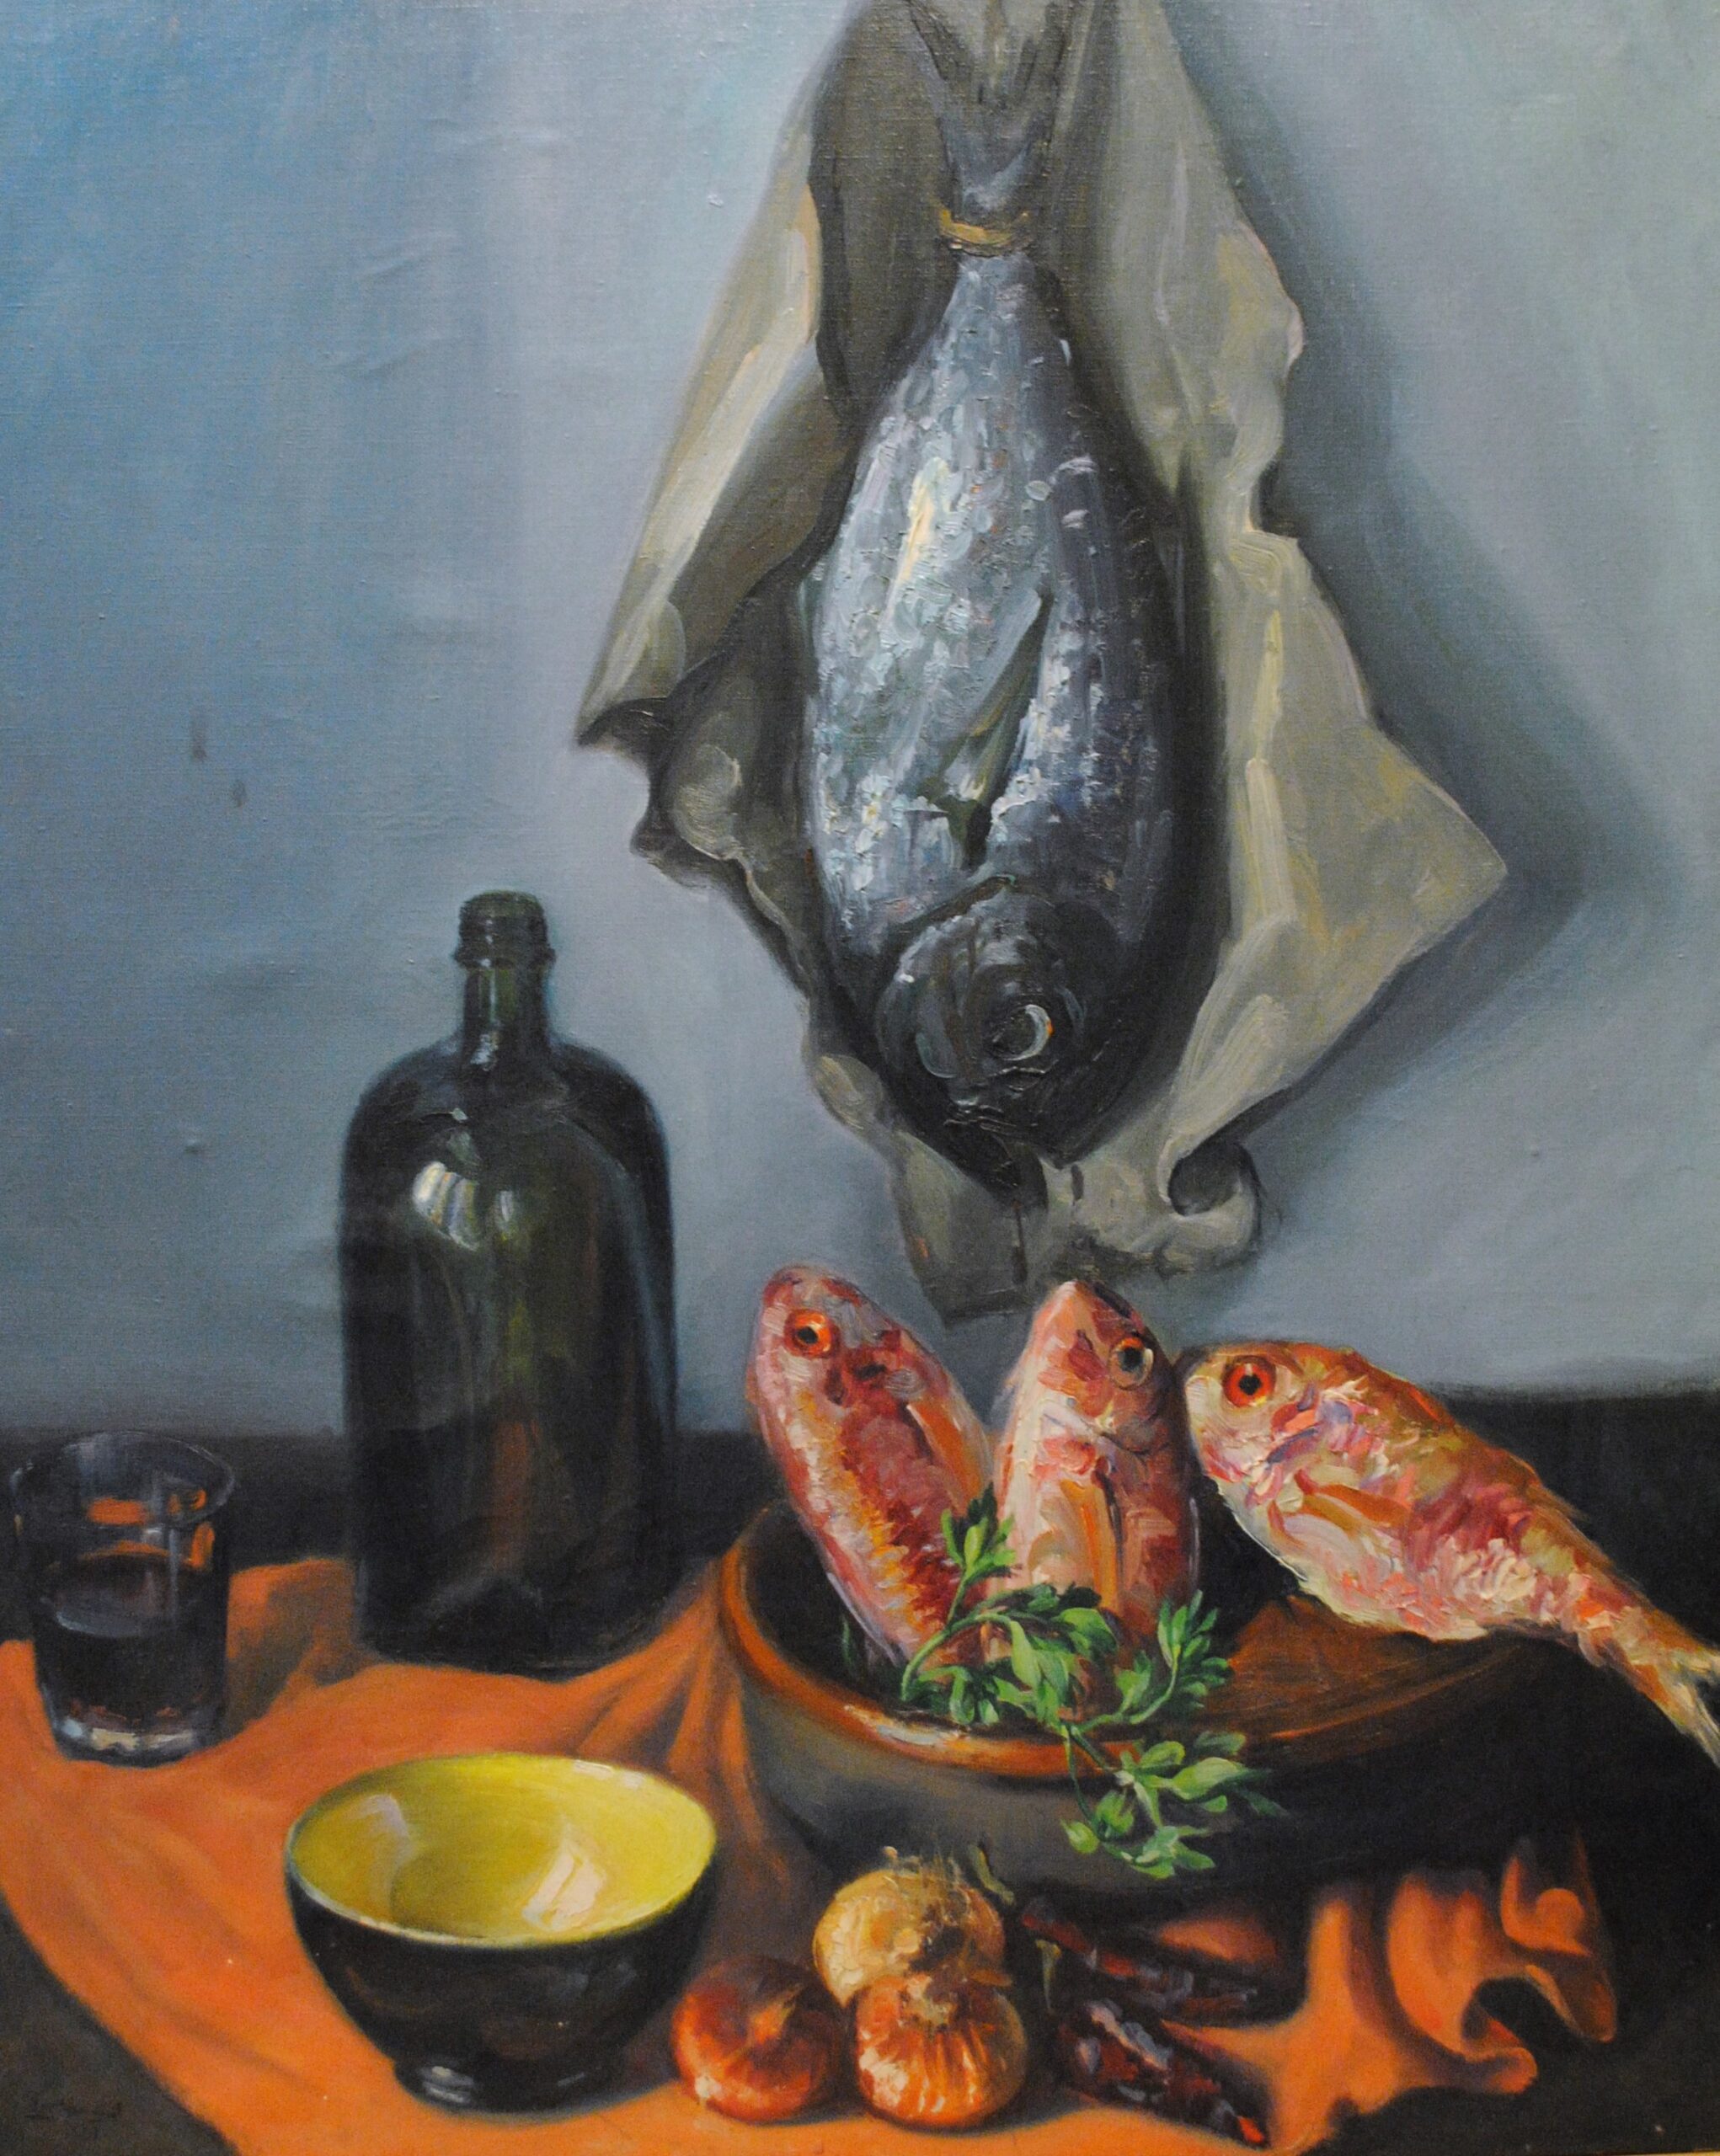 Pintura de José Manaut titulada Bodegón con pescados, 1961. Óleo sobre lienzo.